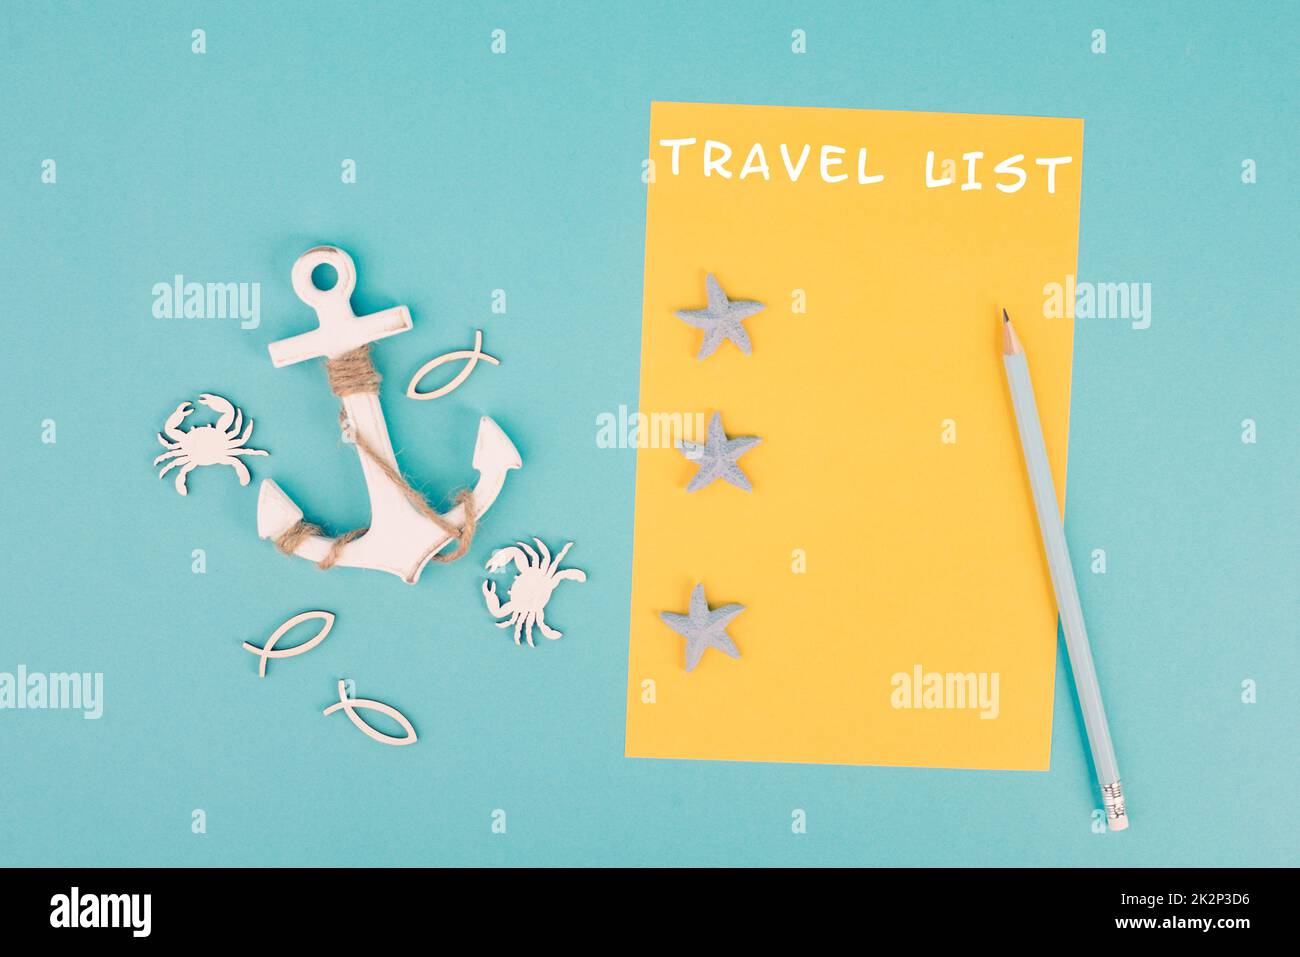 Die Reiseliste steht auf dem gelben Papier, Anker mit Fischsternen und Krabben, Urlaubsplan und Reiseziel, Urlaubs- und Lifestyle-Konzept Stockfoto